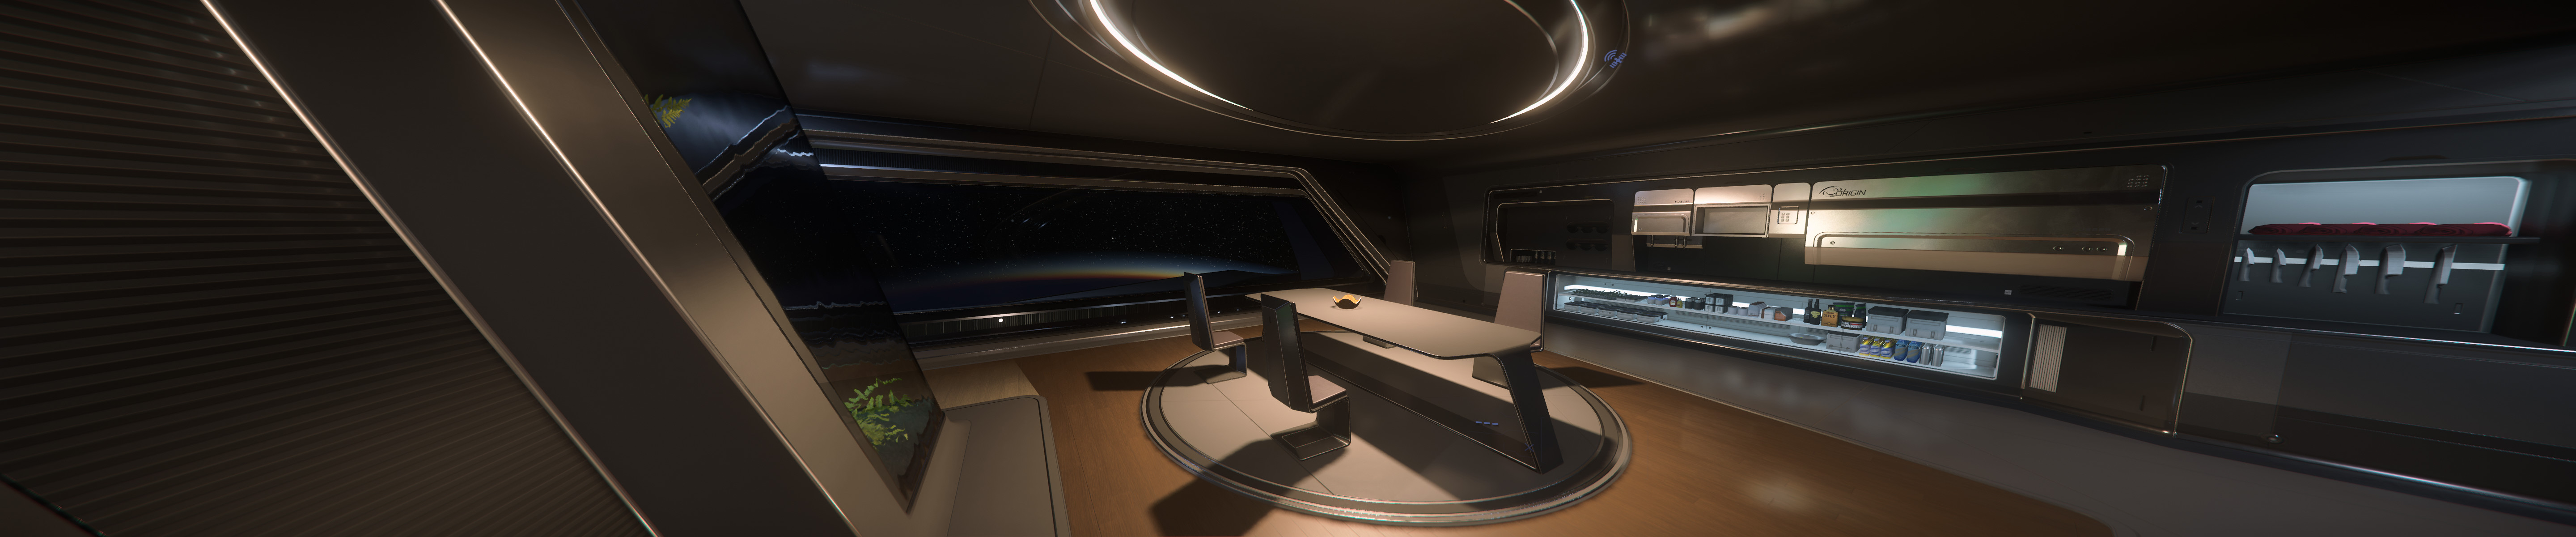 Origin 890 Jump interior (Star Citizen) by michael_crown